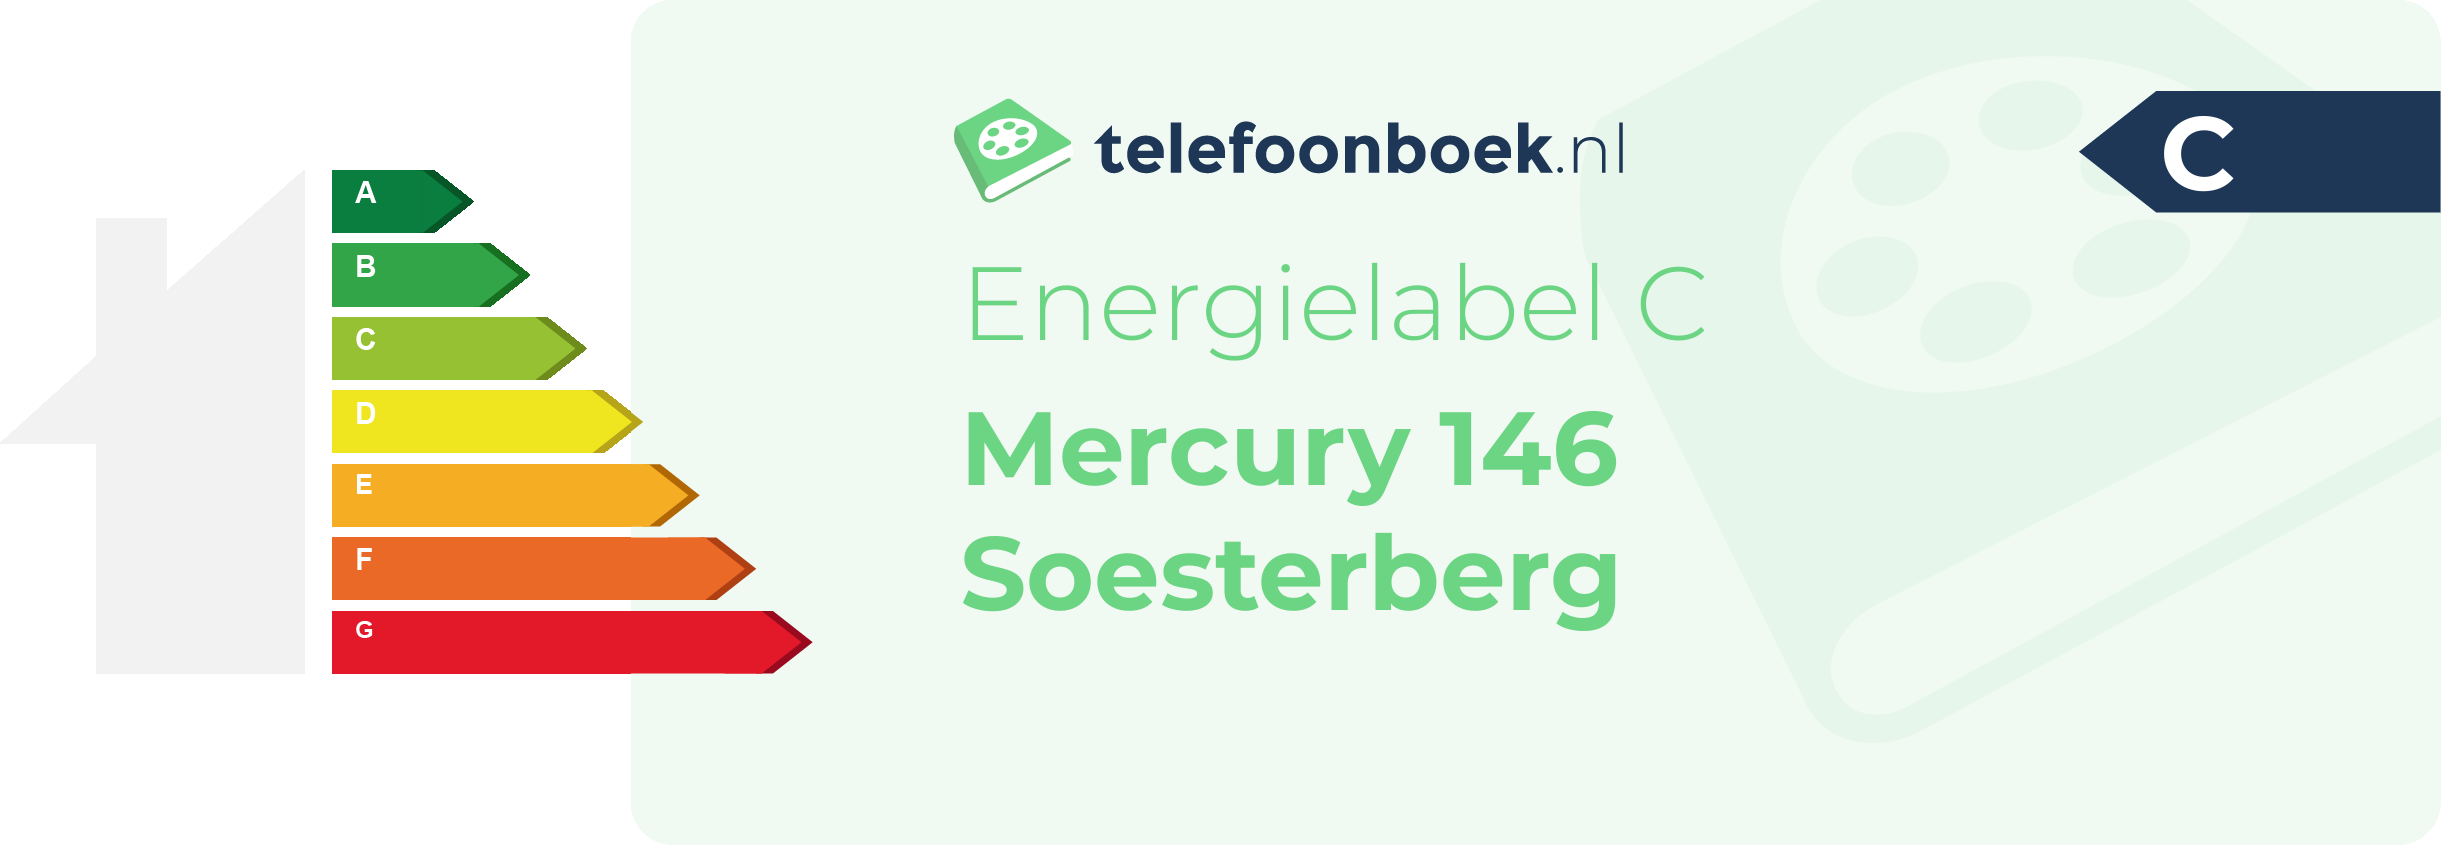 Energielabel Mercury 146 Soesterberg